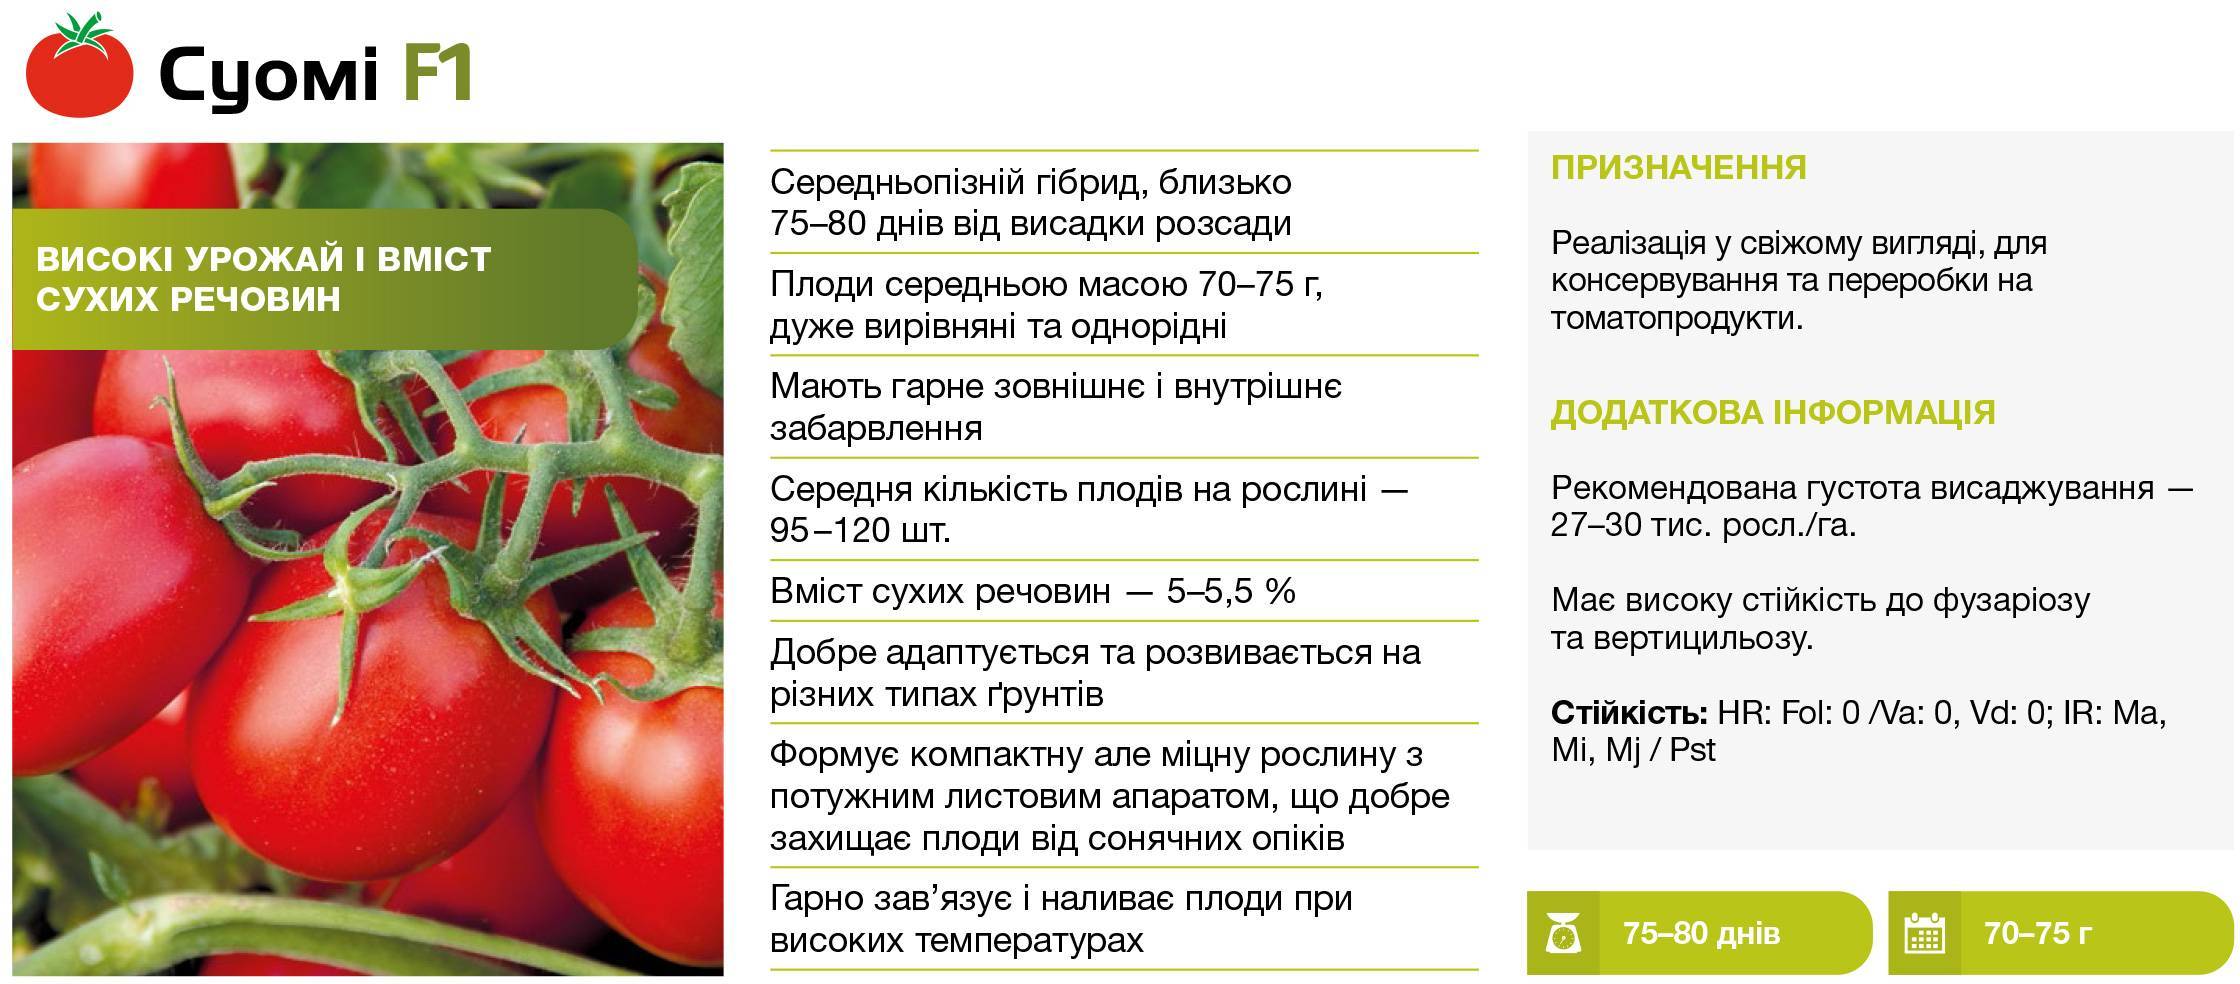 Томат янтарная россыпь: отзывы об урожайности помидоров, описание и характеристика помидоров